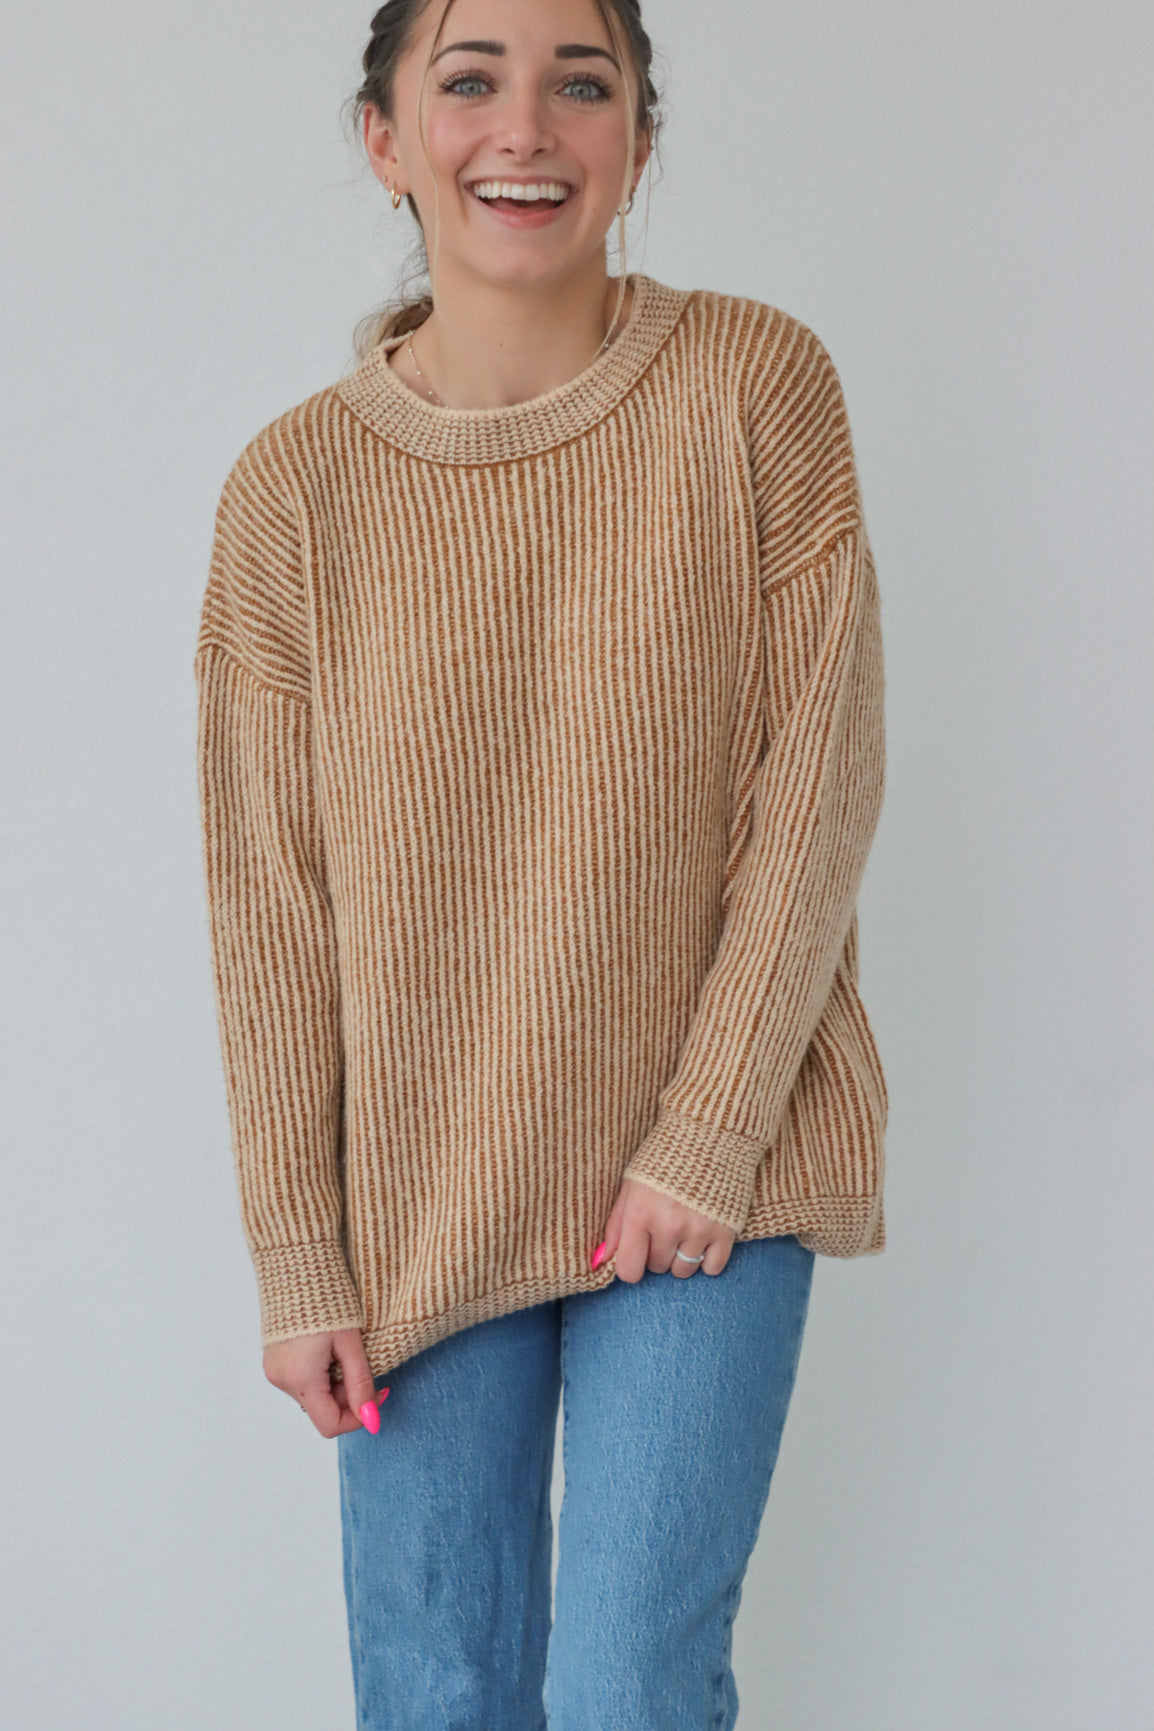 girl wearing tan ribbed sweater